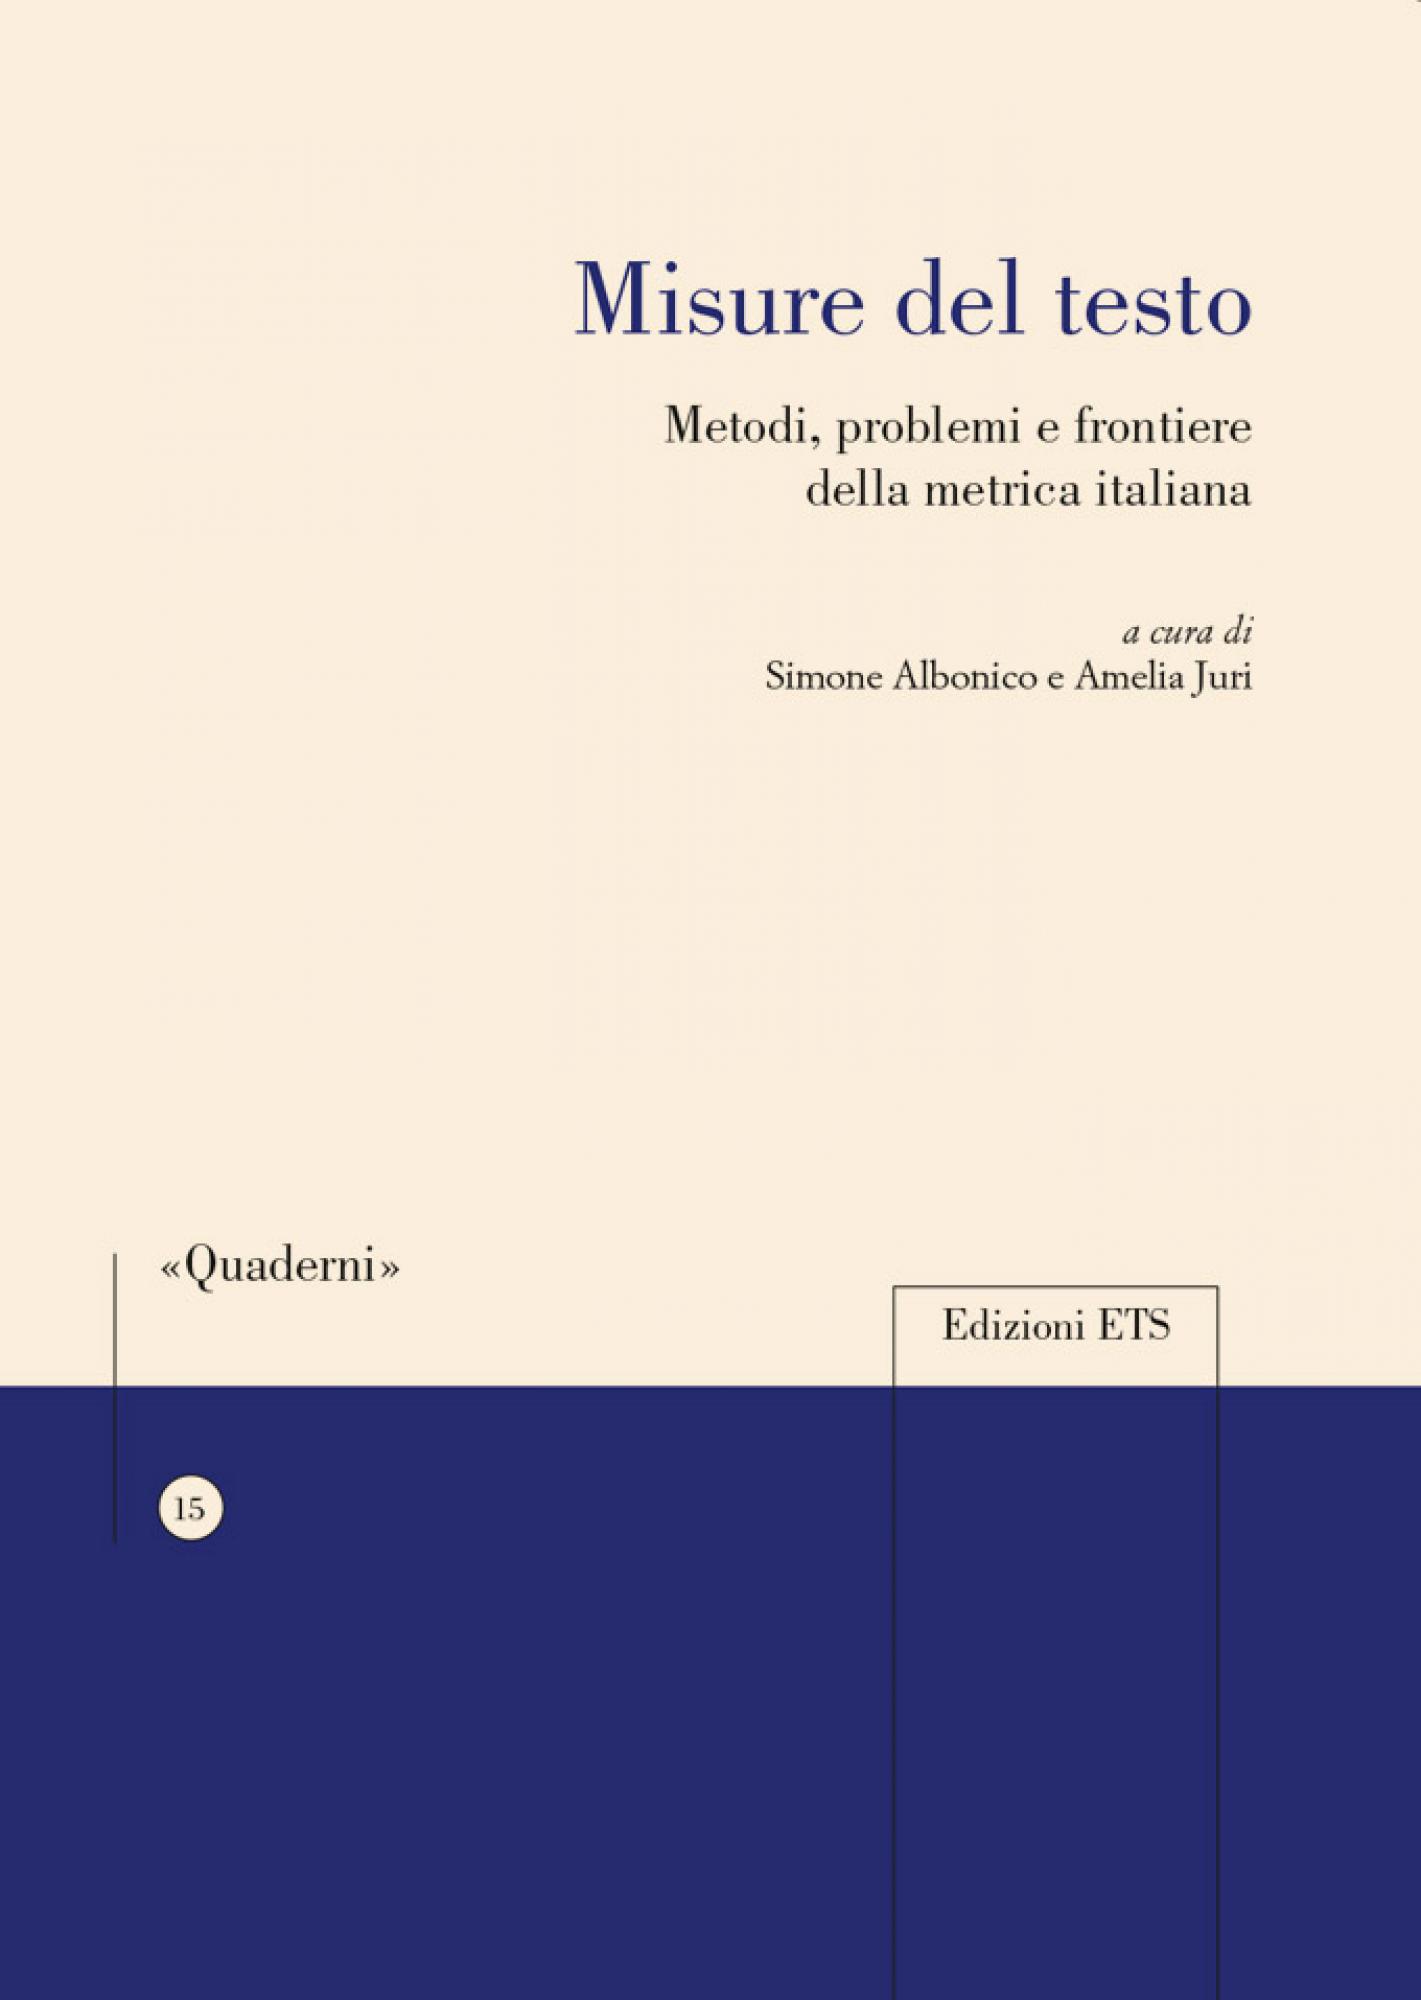 Misure del testo.Metodi, problemi e frontiere della metrica italiana